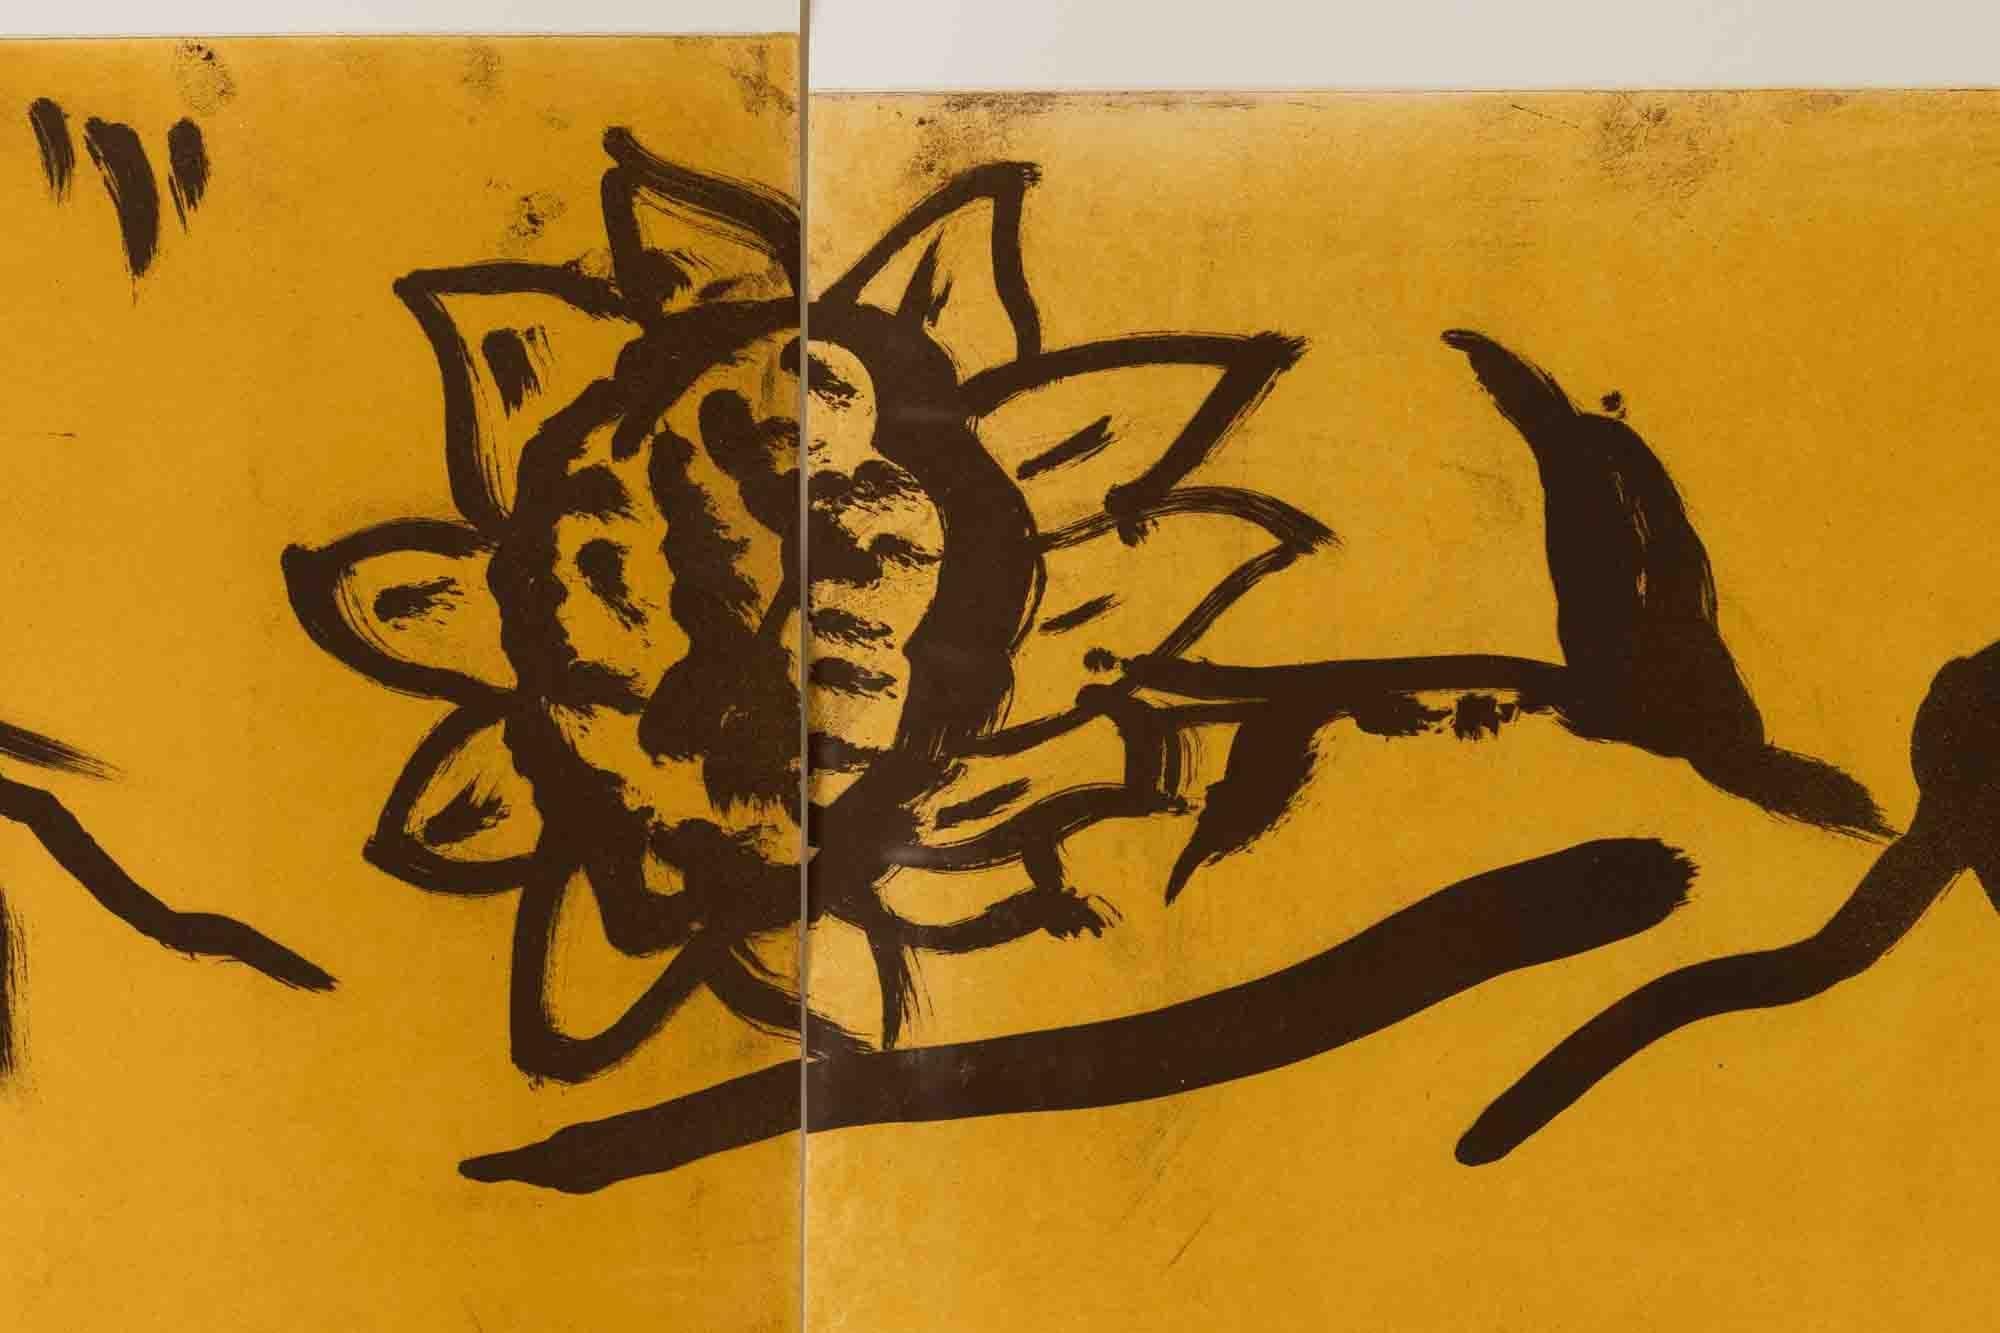 Révélé à la fin des années 1970 et au début des années 1980, l'artiste américain Julian Schnabel est connu pour sa pratique multidisciplinaire qui s'étend de la peinture à la sculpture en passant par le cinéma. Au cours de son ascension dans le